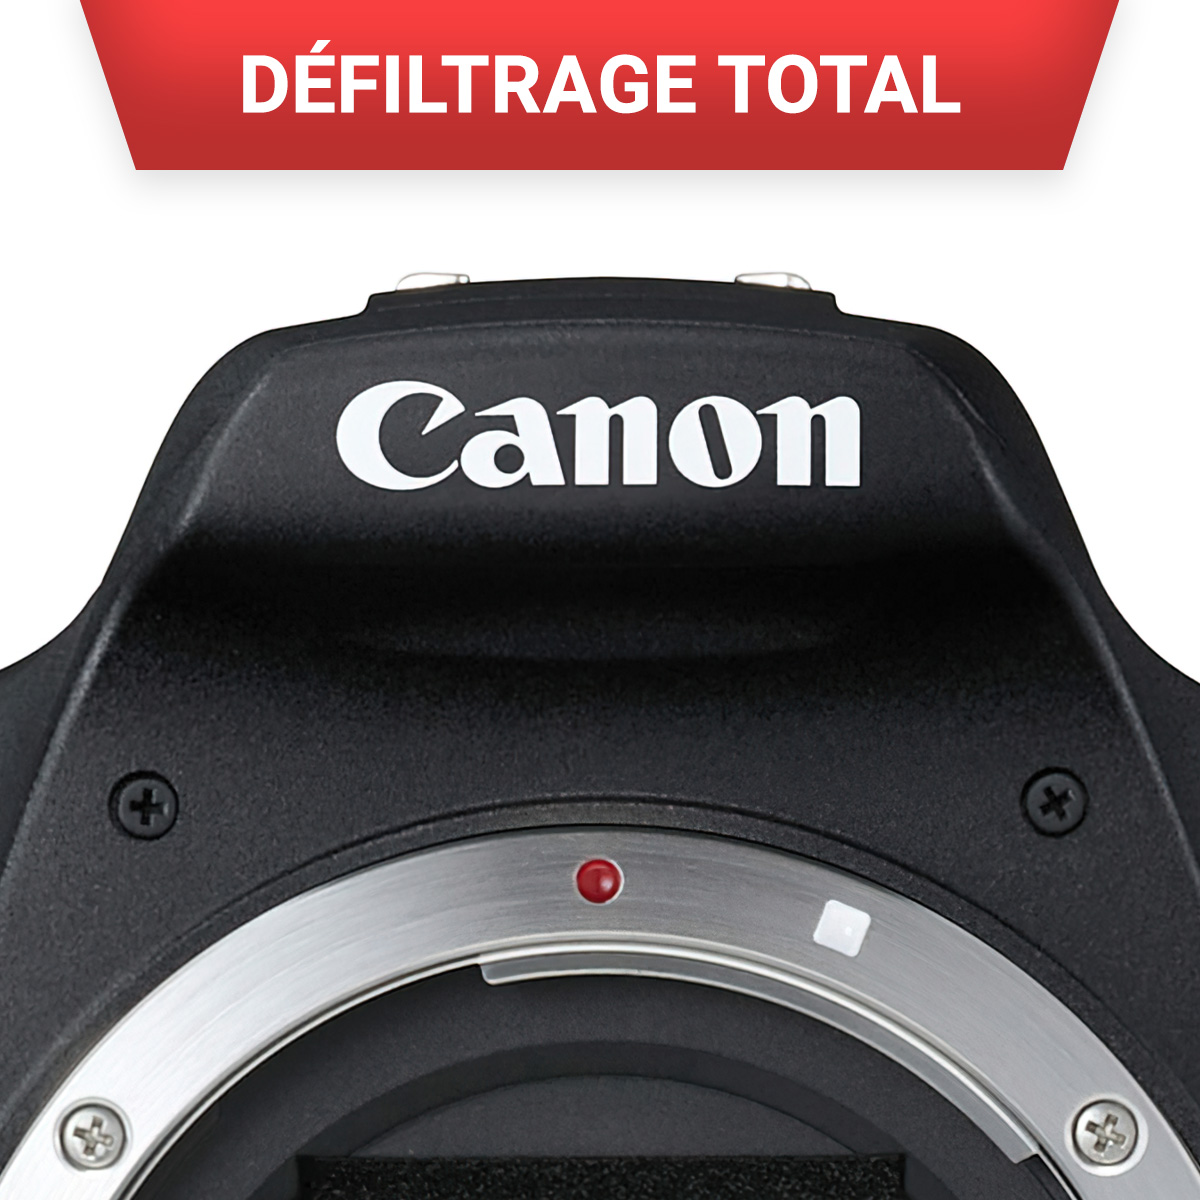 Défiltrage total pour APN Canon EOS- Nikon - Sony - Format APS-C Défiltrage total